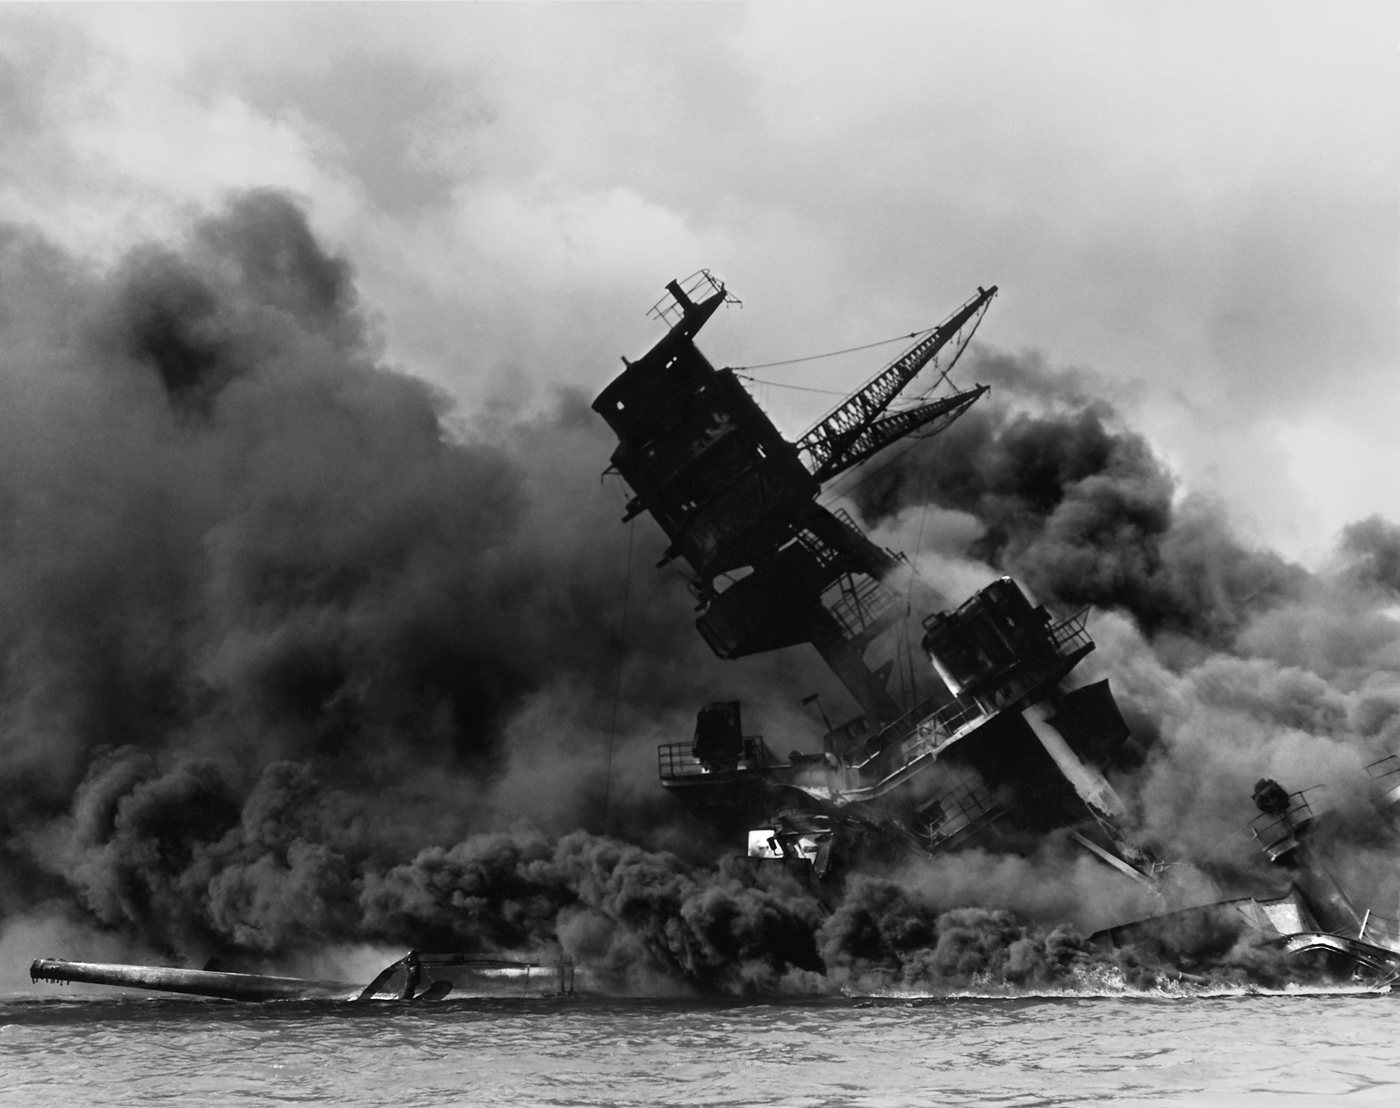 Fotografia della USS Arizona, distrutta durante l'attacco di Pearl Harbor. La devastazione del magazzino degli armamenti di questa nave provoca la morte di circa 1.200 persone